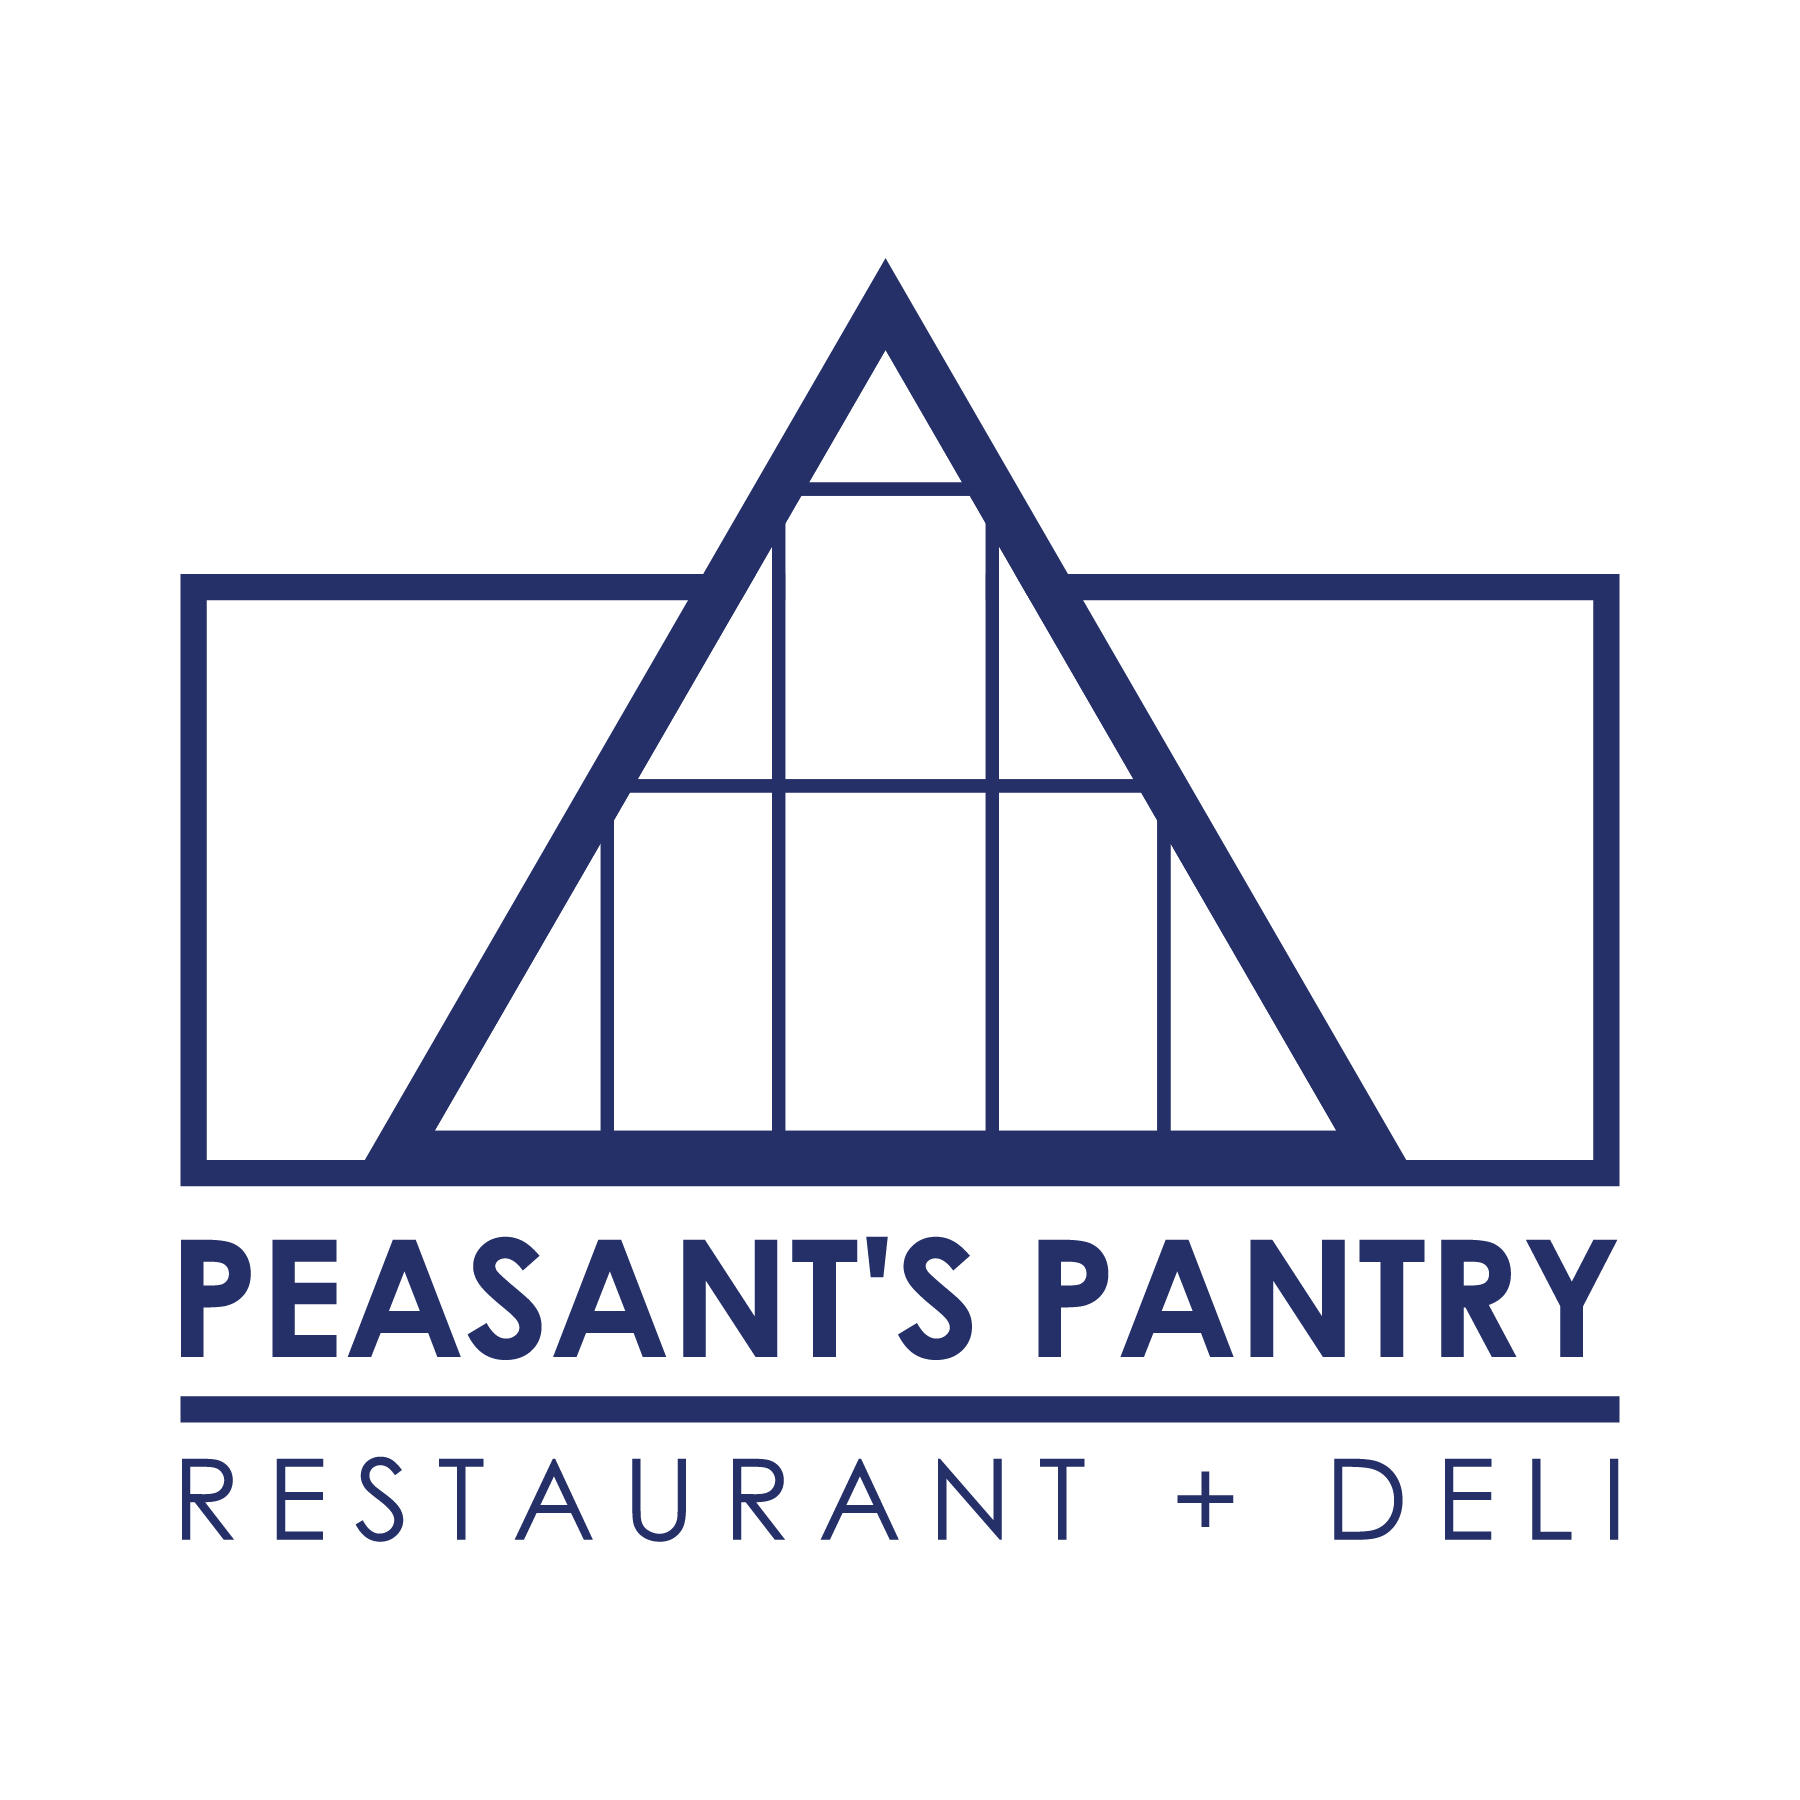 Peasant's Pantry